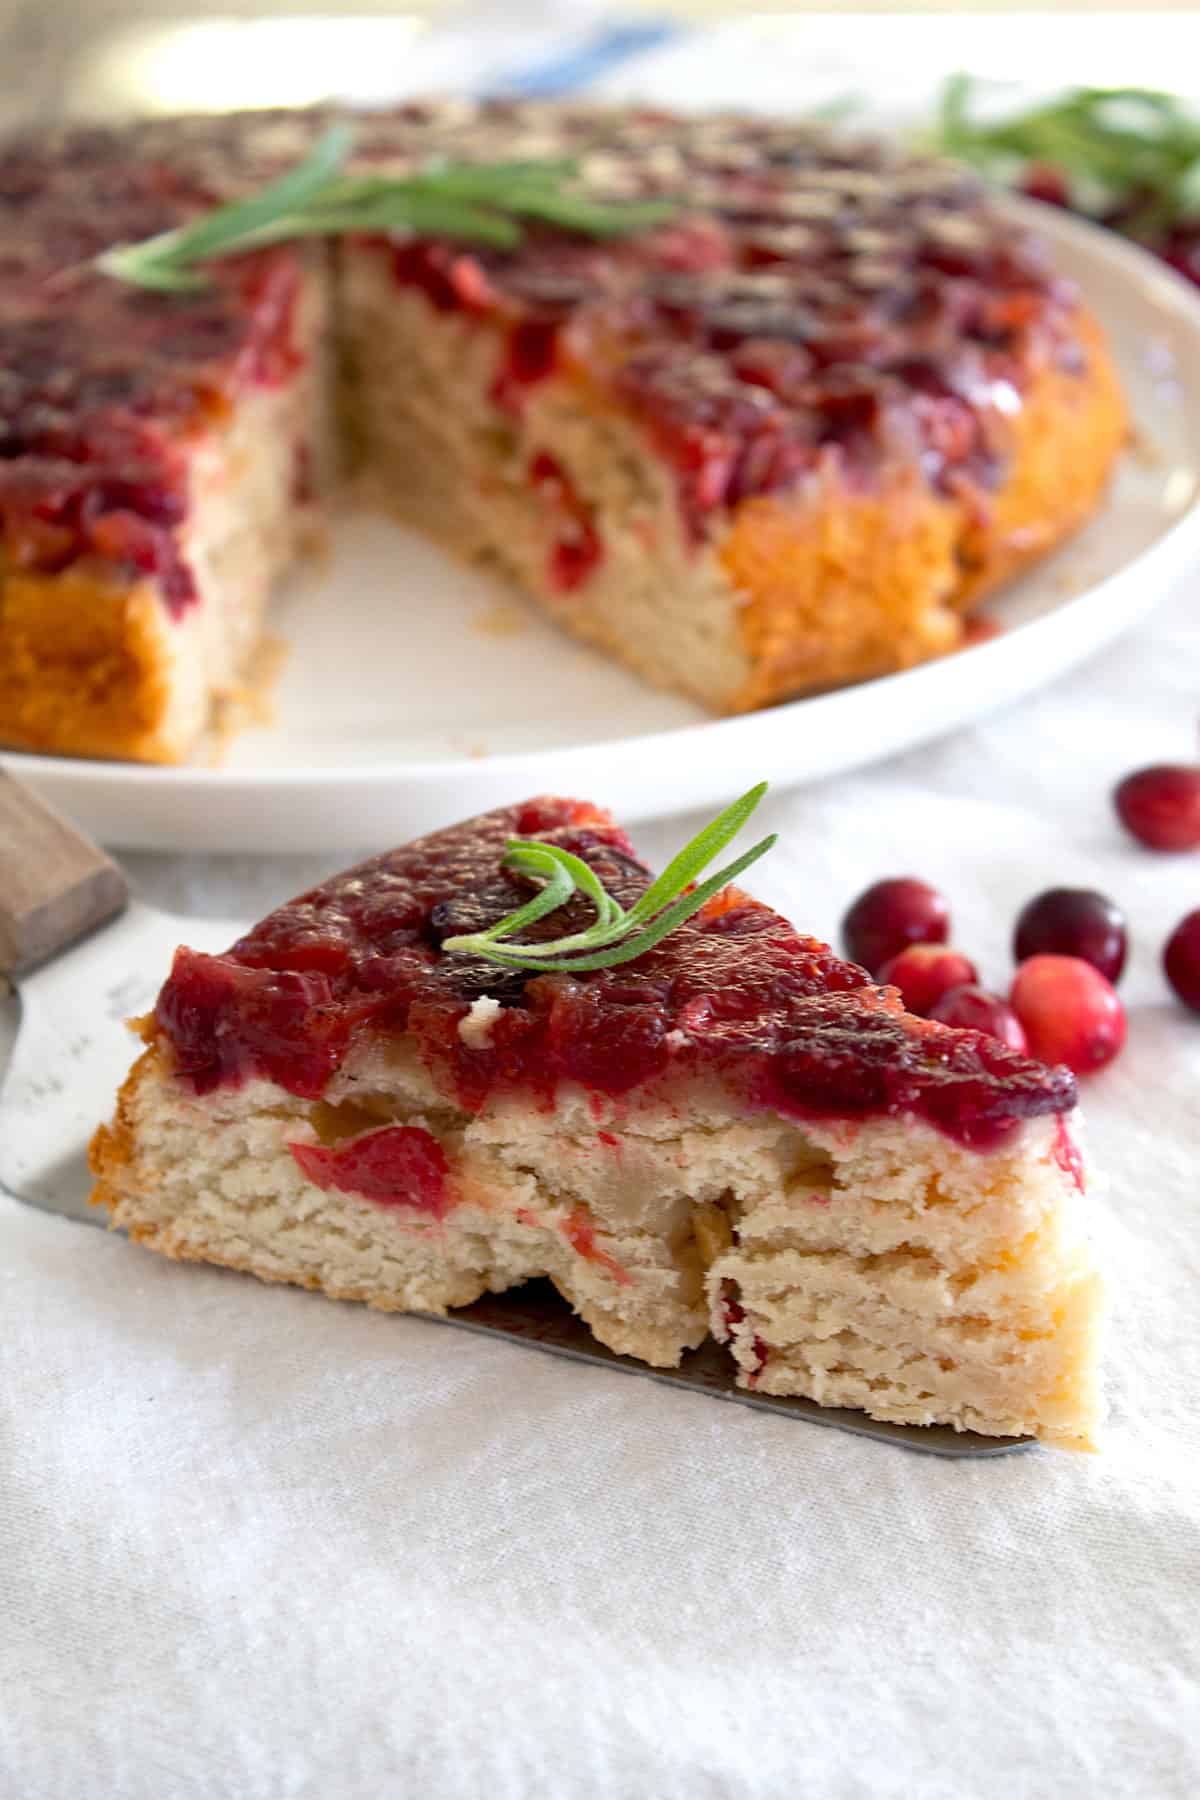 cranberry upside down cake on a serving platter sliced